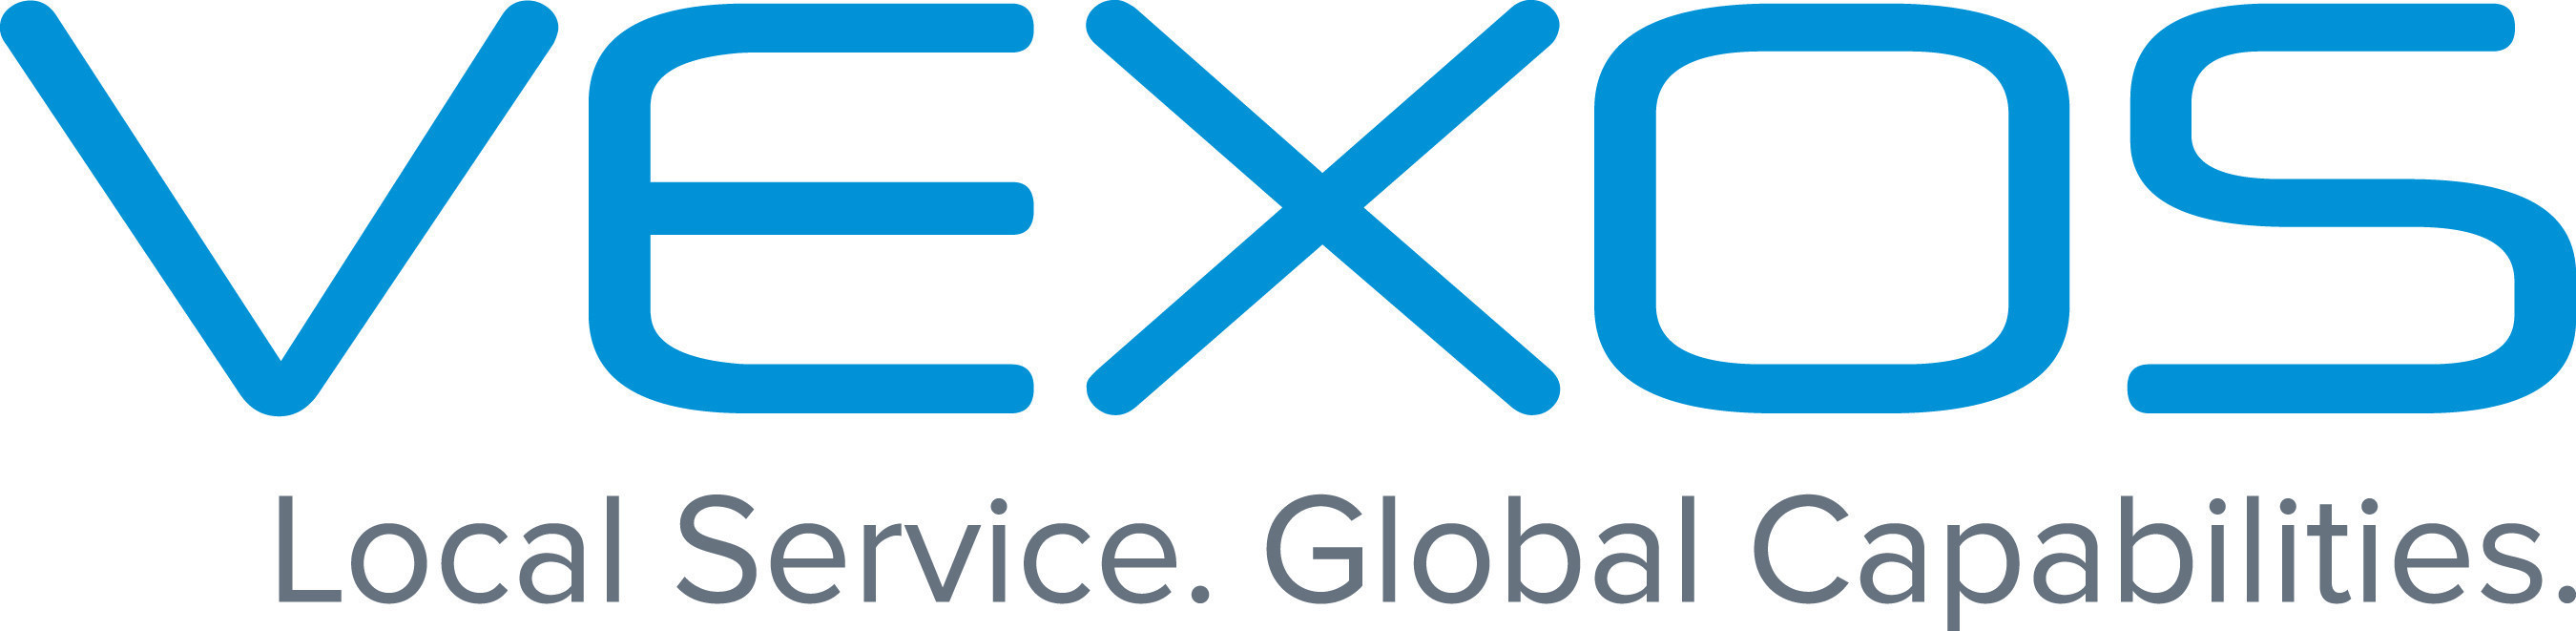 Vexos Logo www.vexos.com